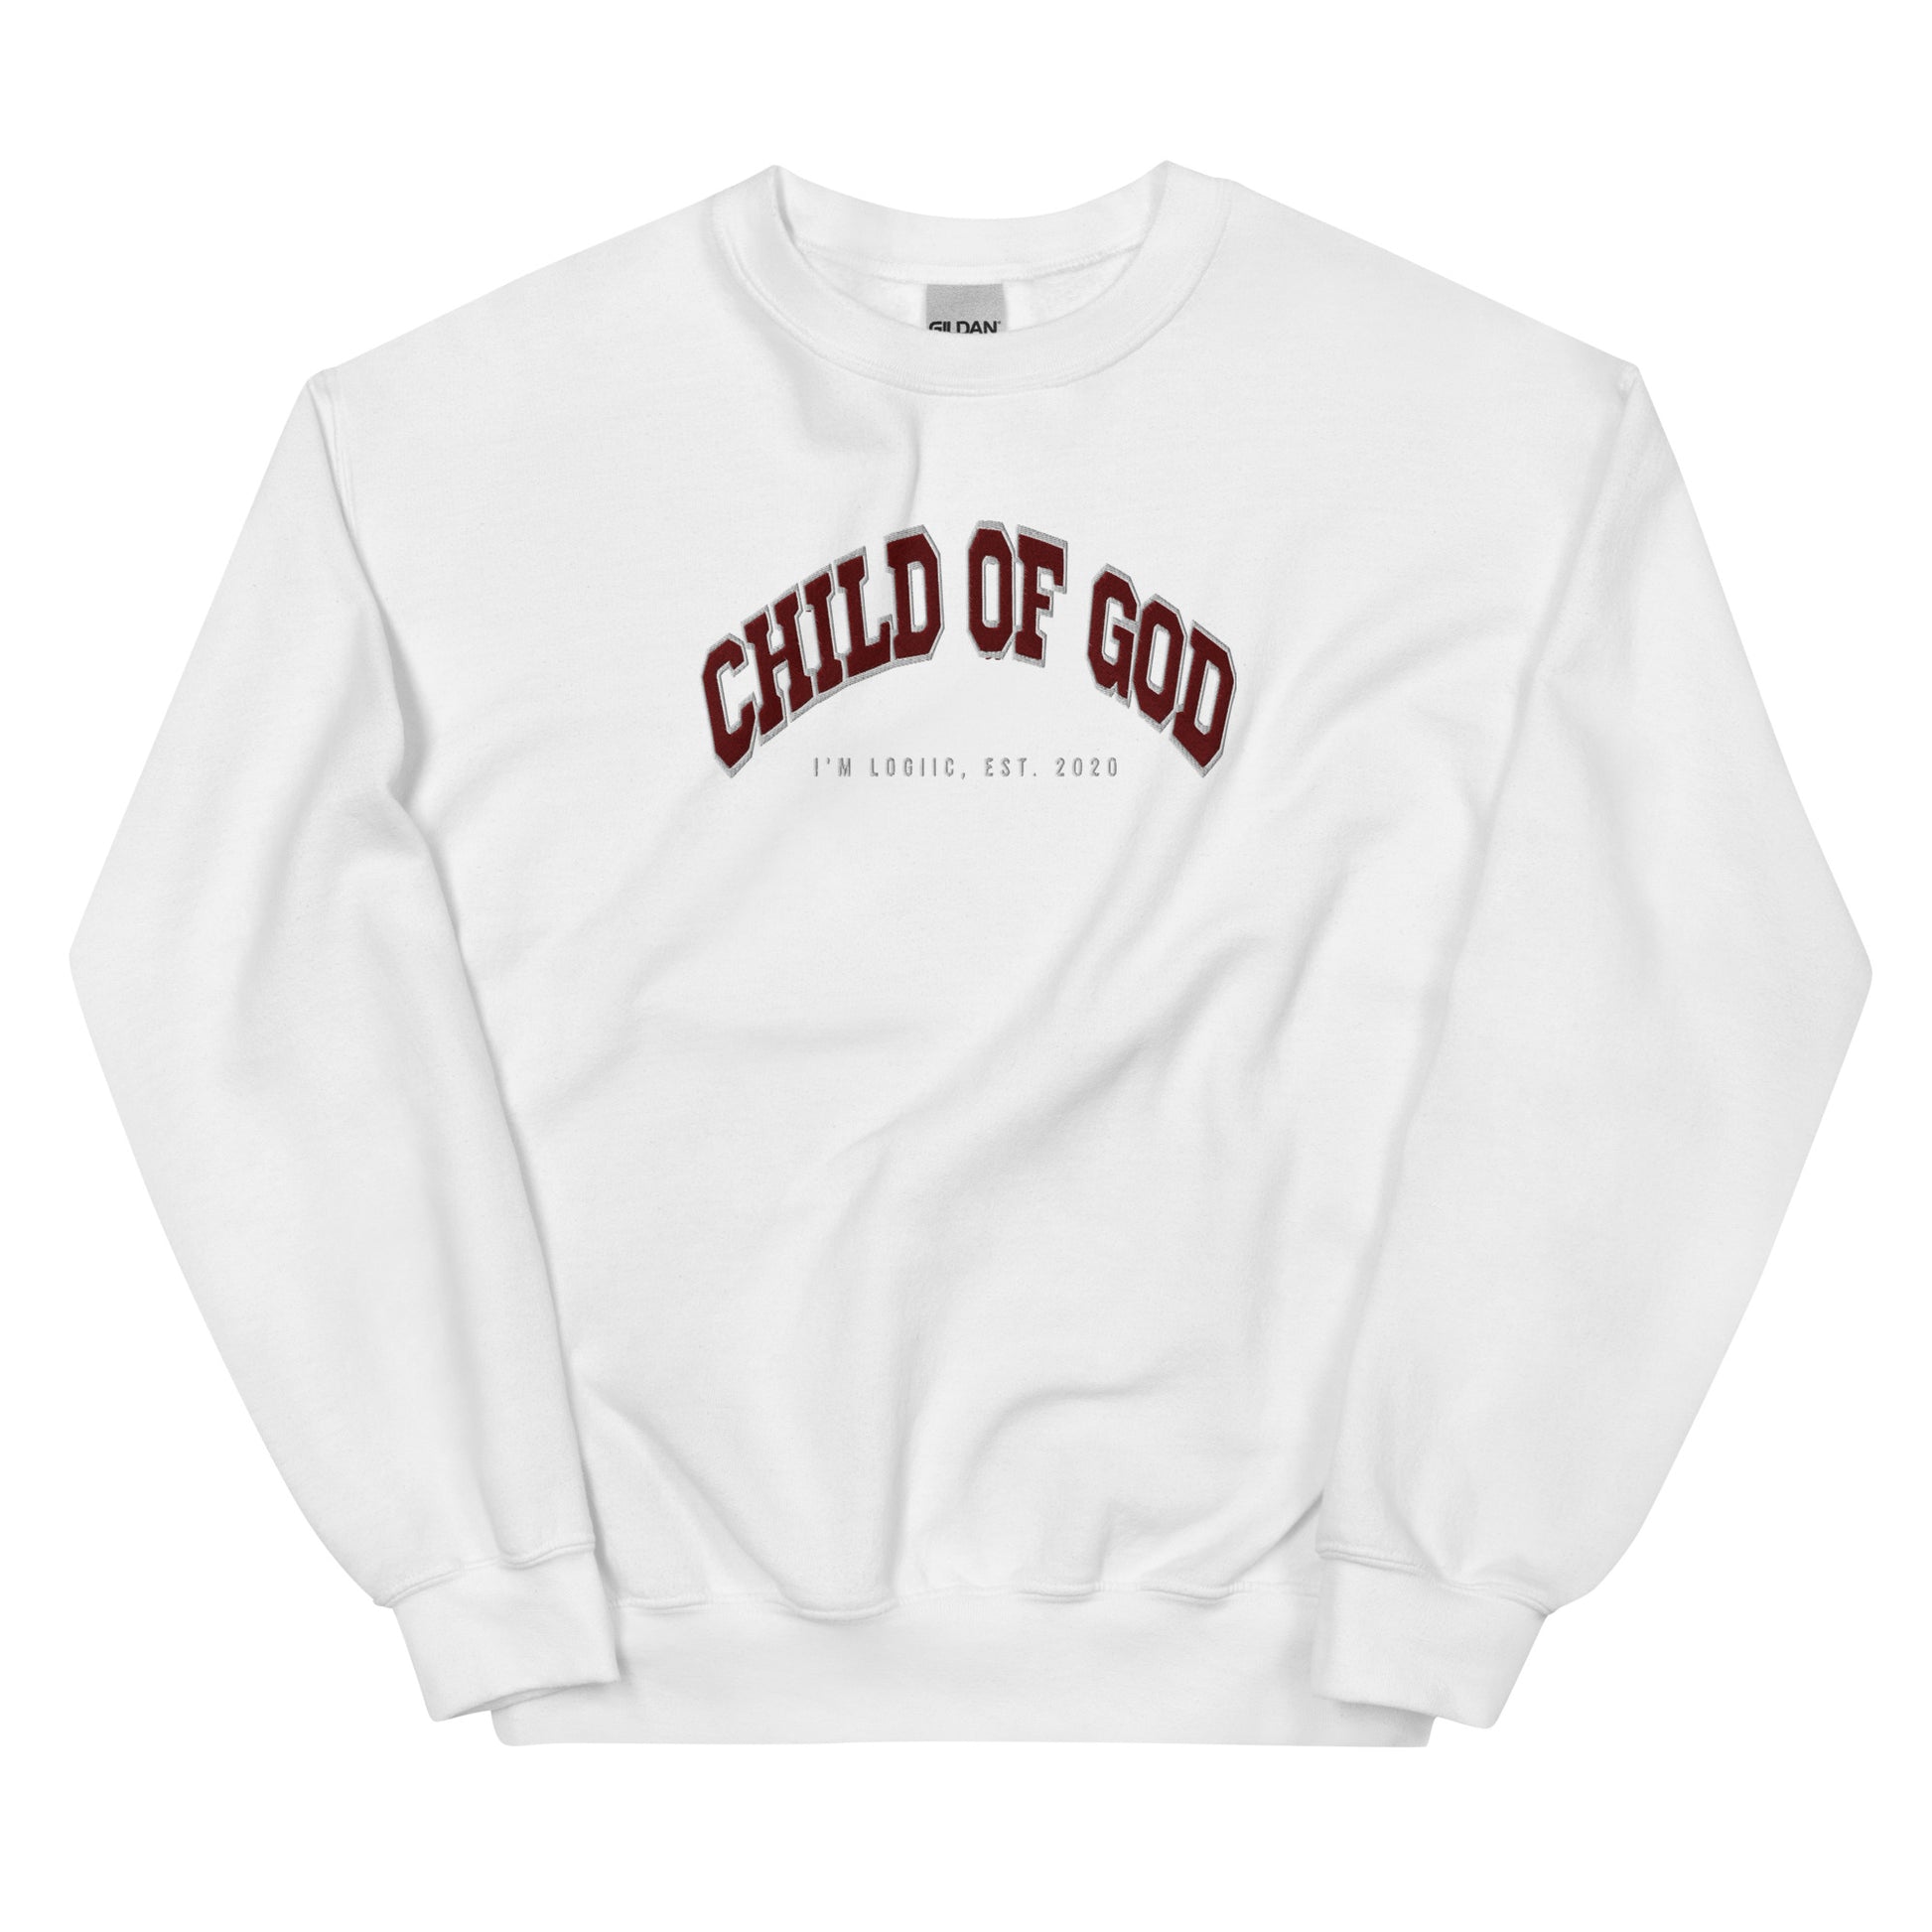 Child of God Unisex Sweatshirt - White / S